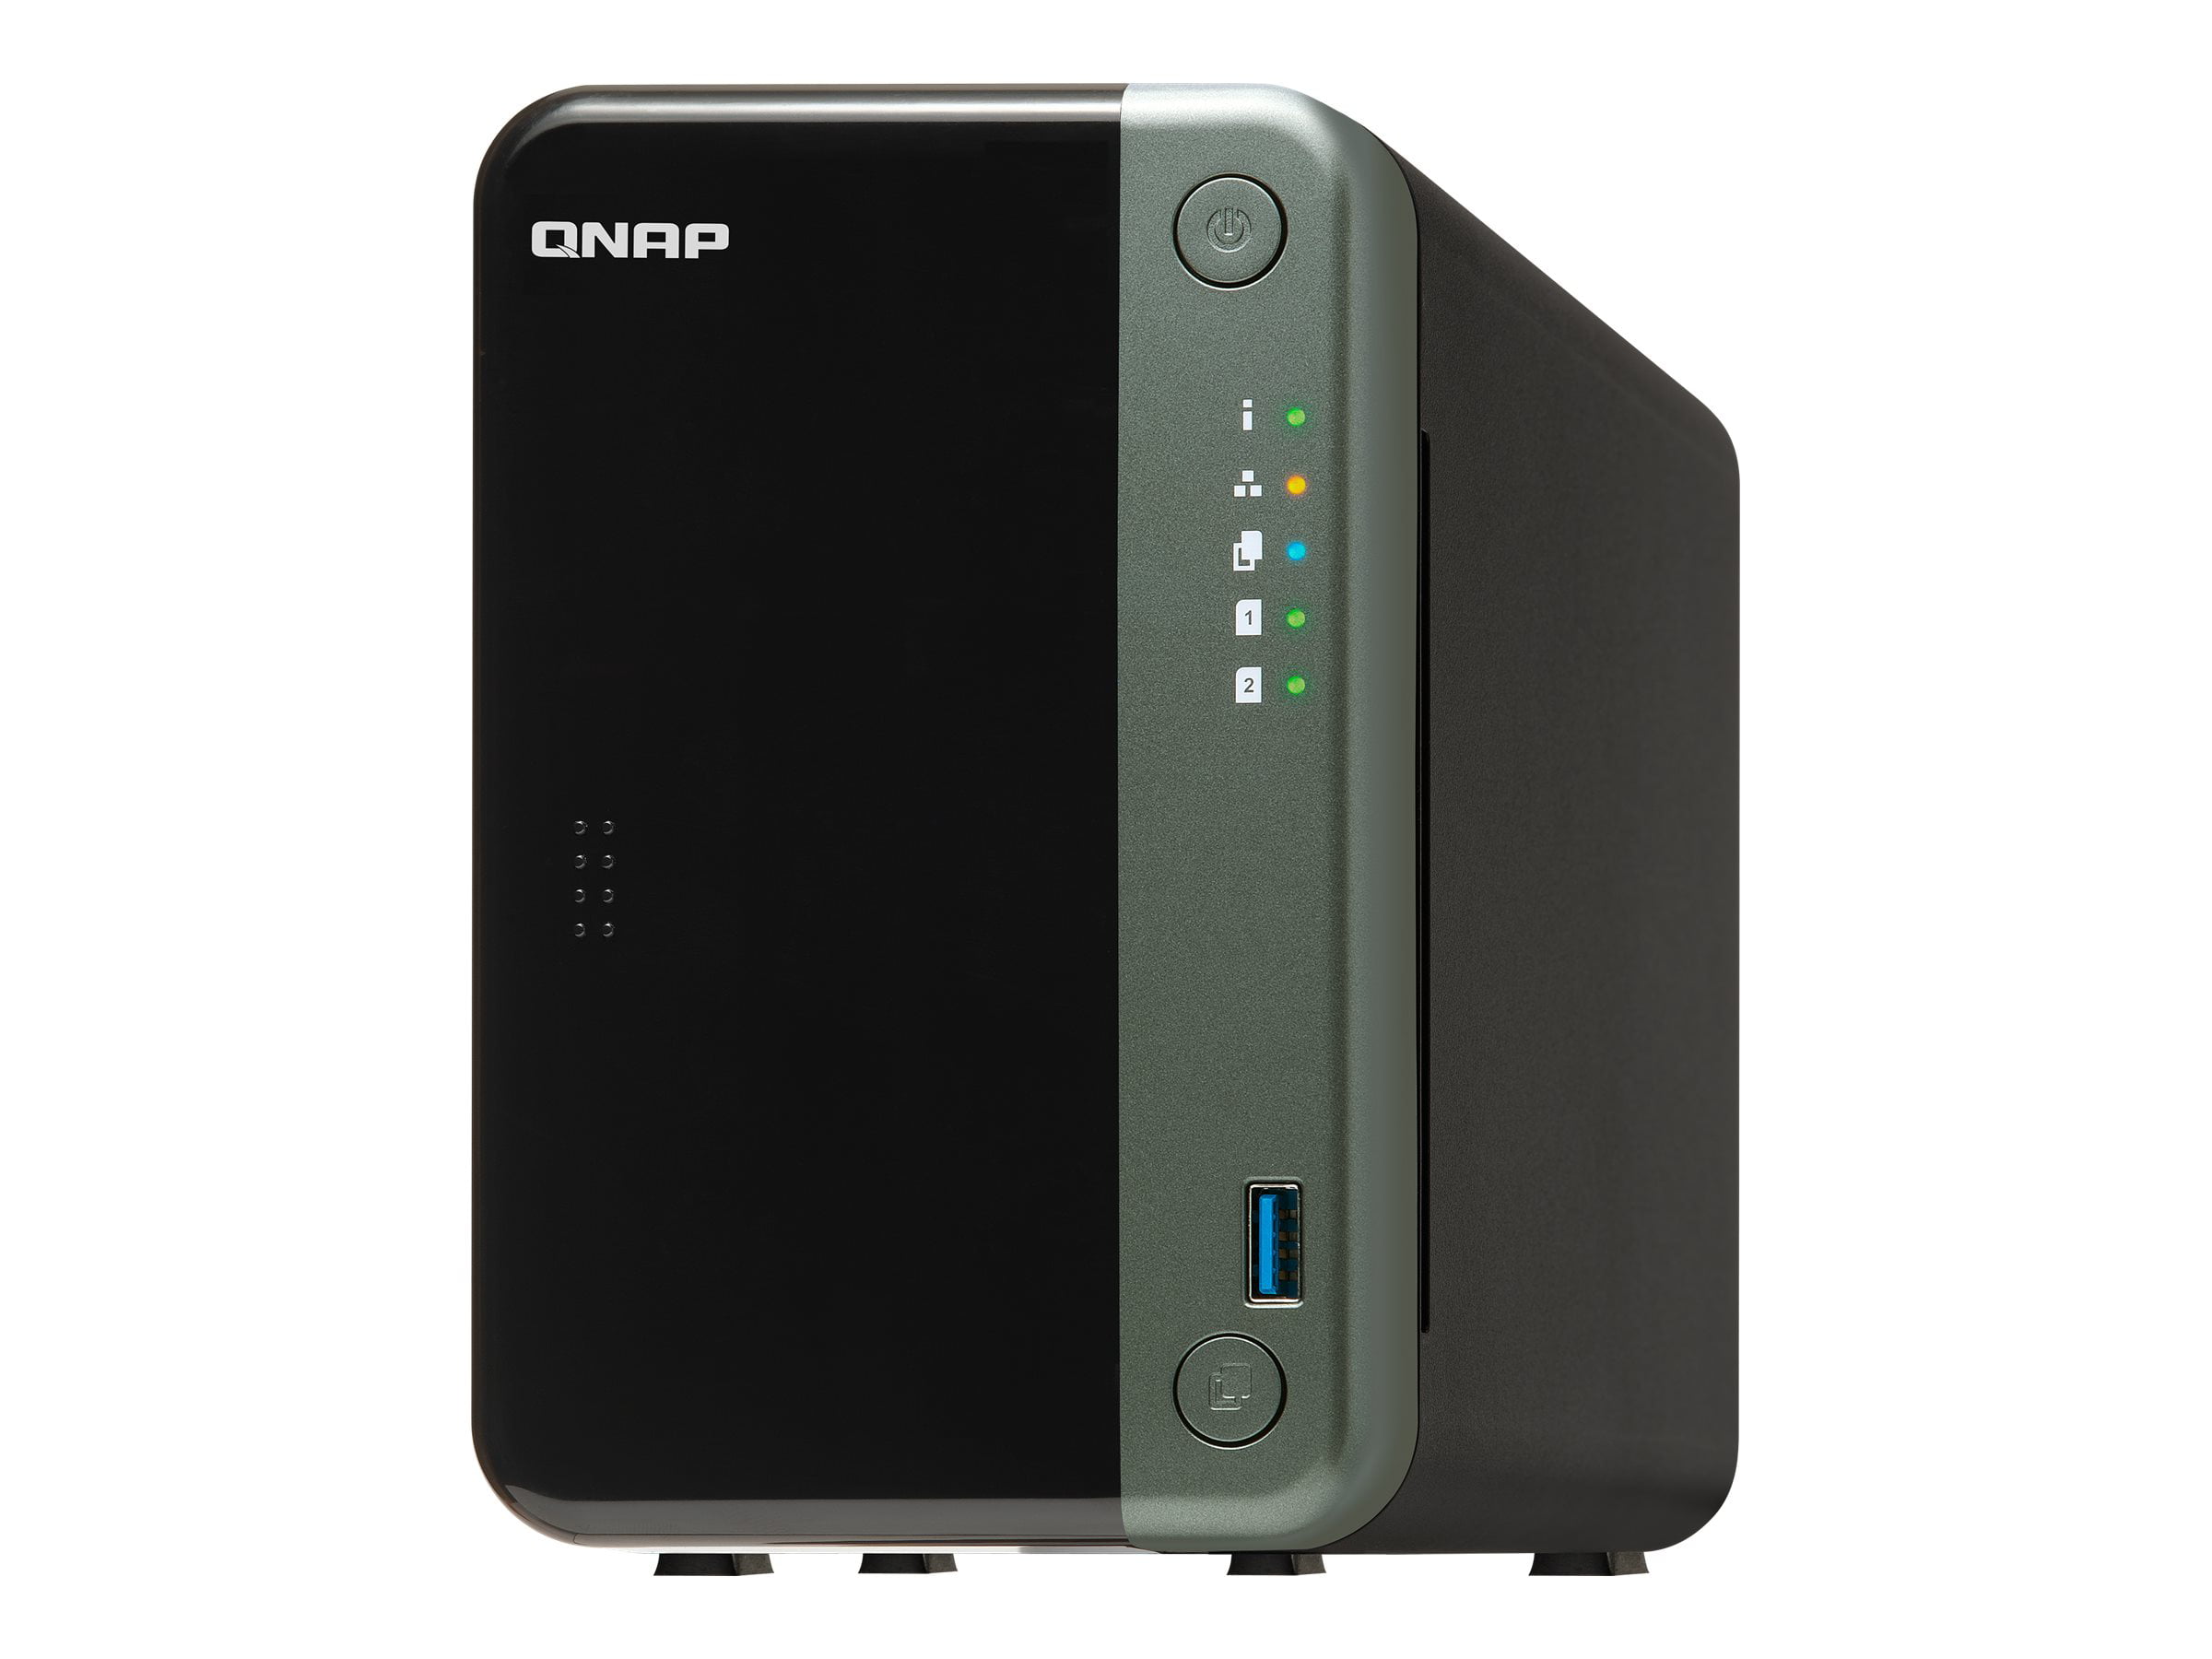 QNAP TS-253D - NAS server - 2 bays - SATA 6Gb/s - RAID 0, 1, JBOD - RAM 4 GB - Gigabit Ethernet iSCSI support - Walmart.com